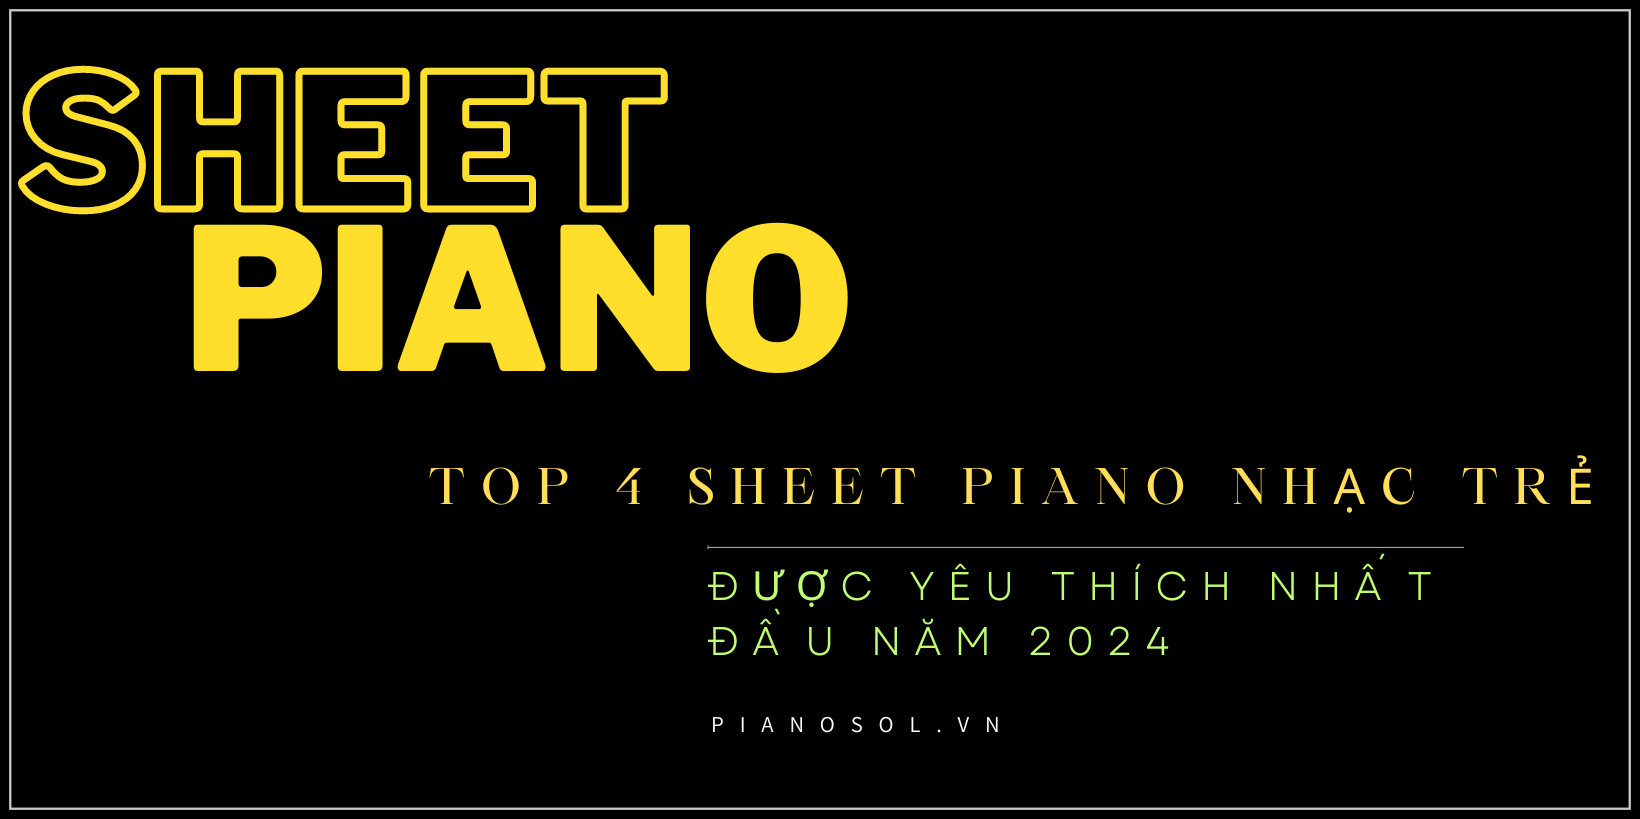 Sheet Piano nhạc trẻ được yêu thích nhất đầu năm 2024